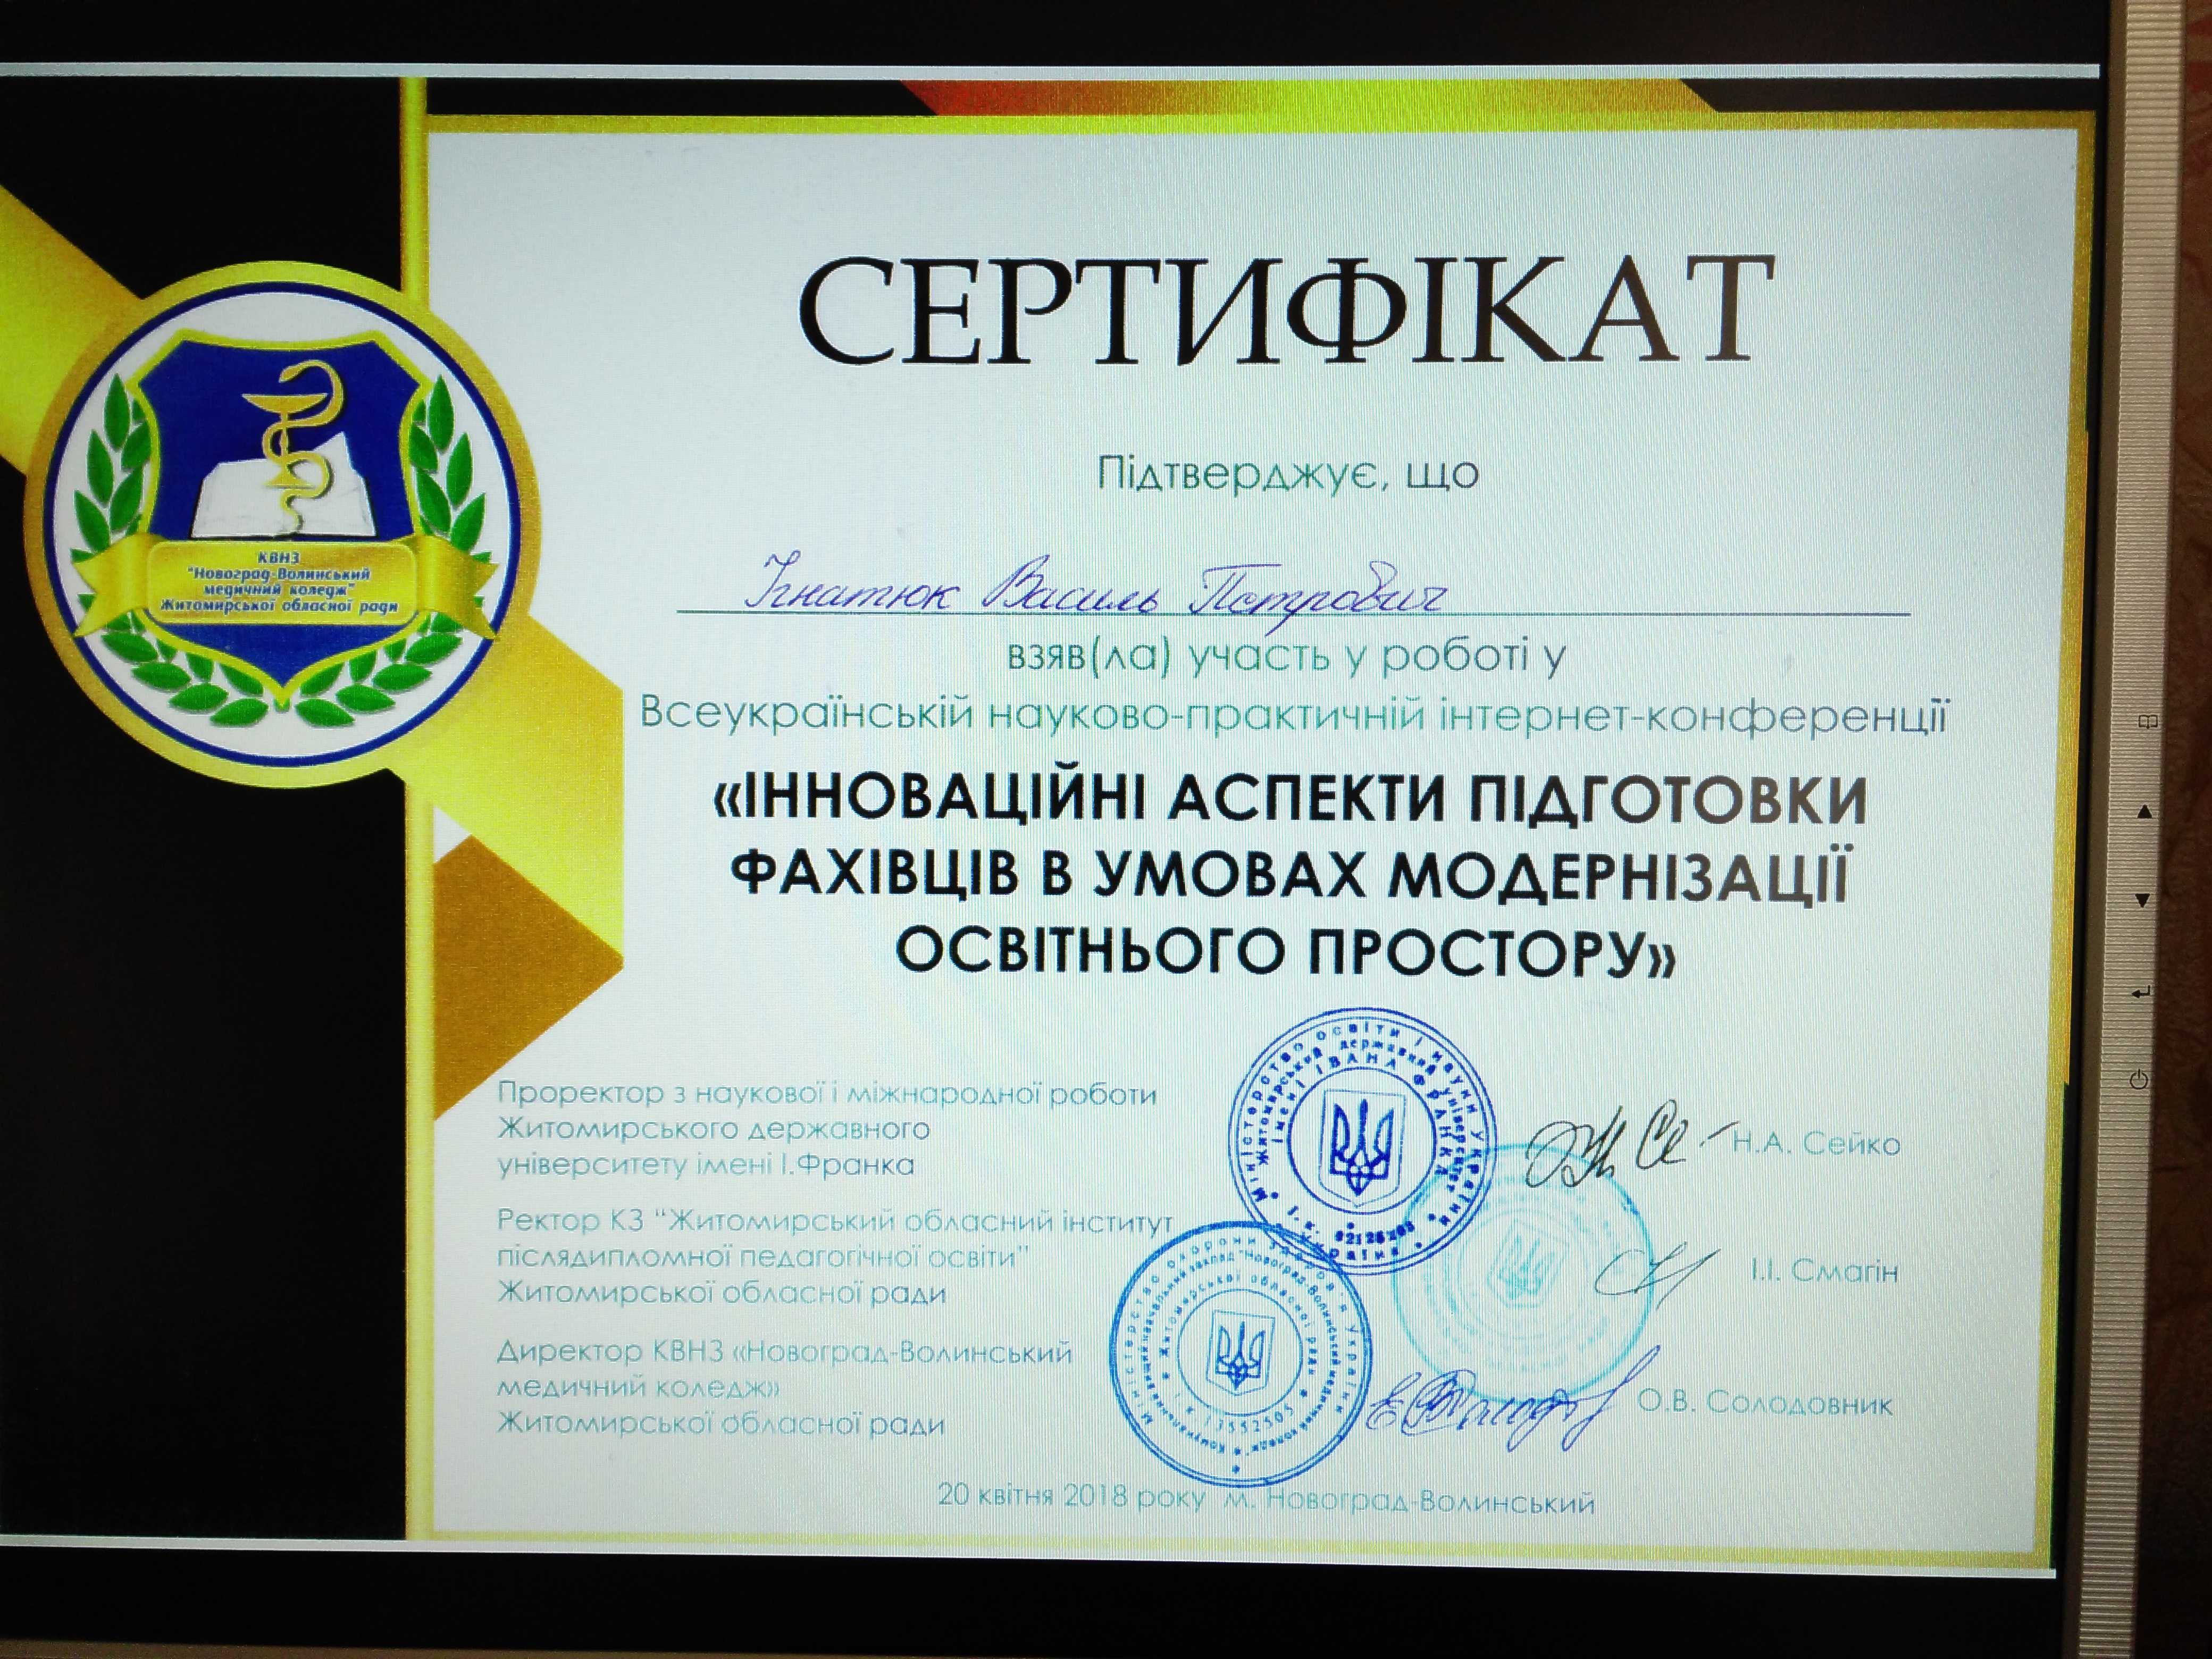 Всеукраїнська науково-практична інтернет-конференція "Інноваційні аспекти підготовки фахівців в умовах модернізації освітнього простору"